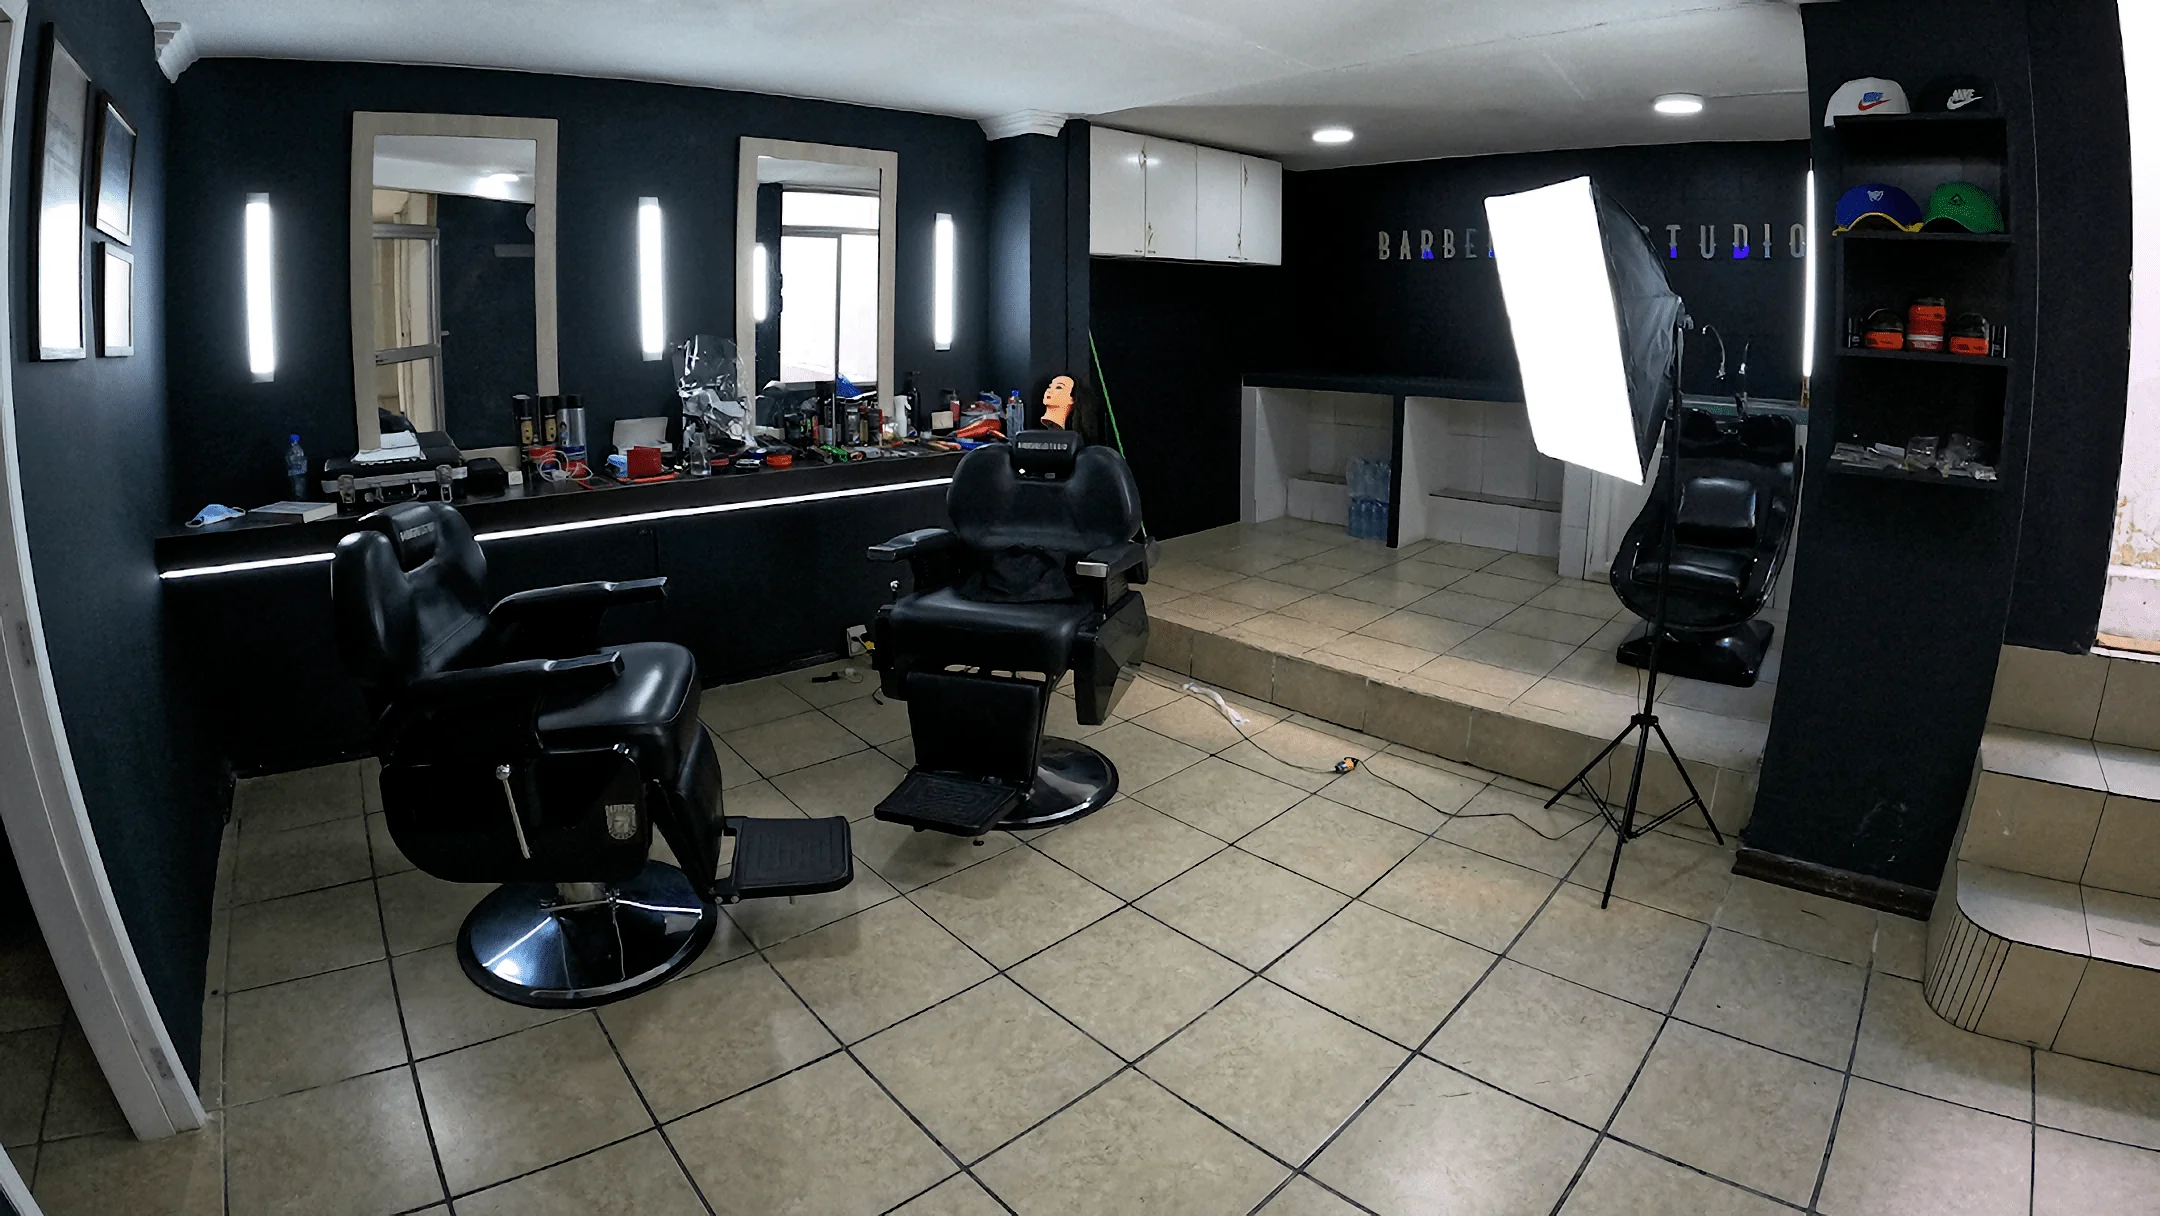 Barberos estudio-2289